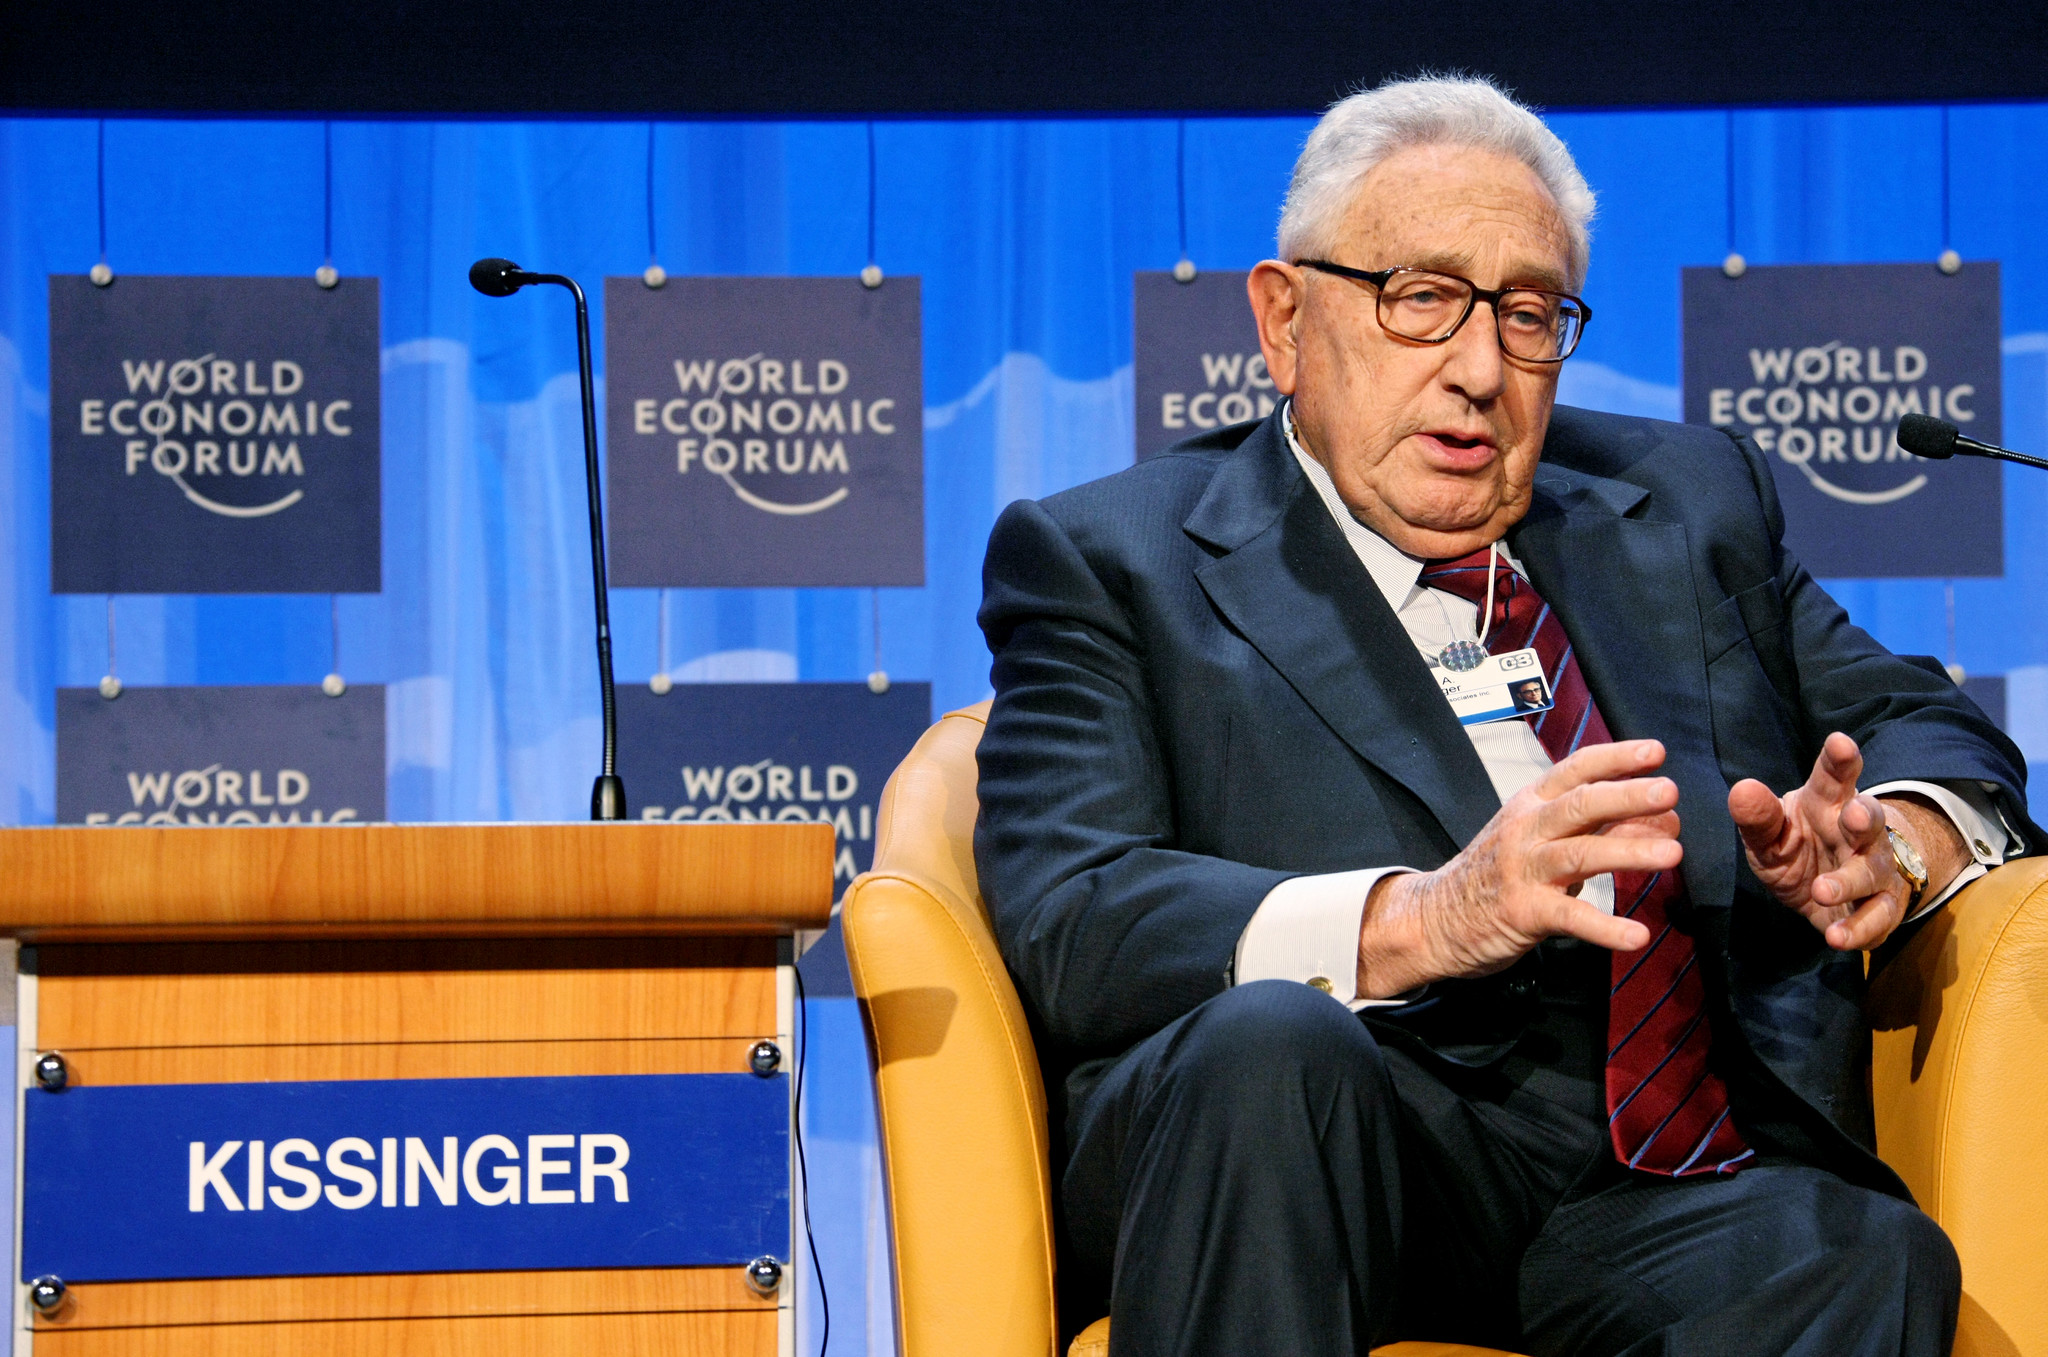 Henry Kissinger: A War Criminal and Normalizer of Corruption